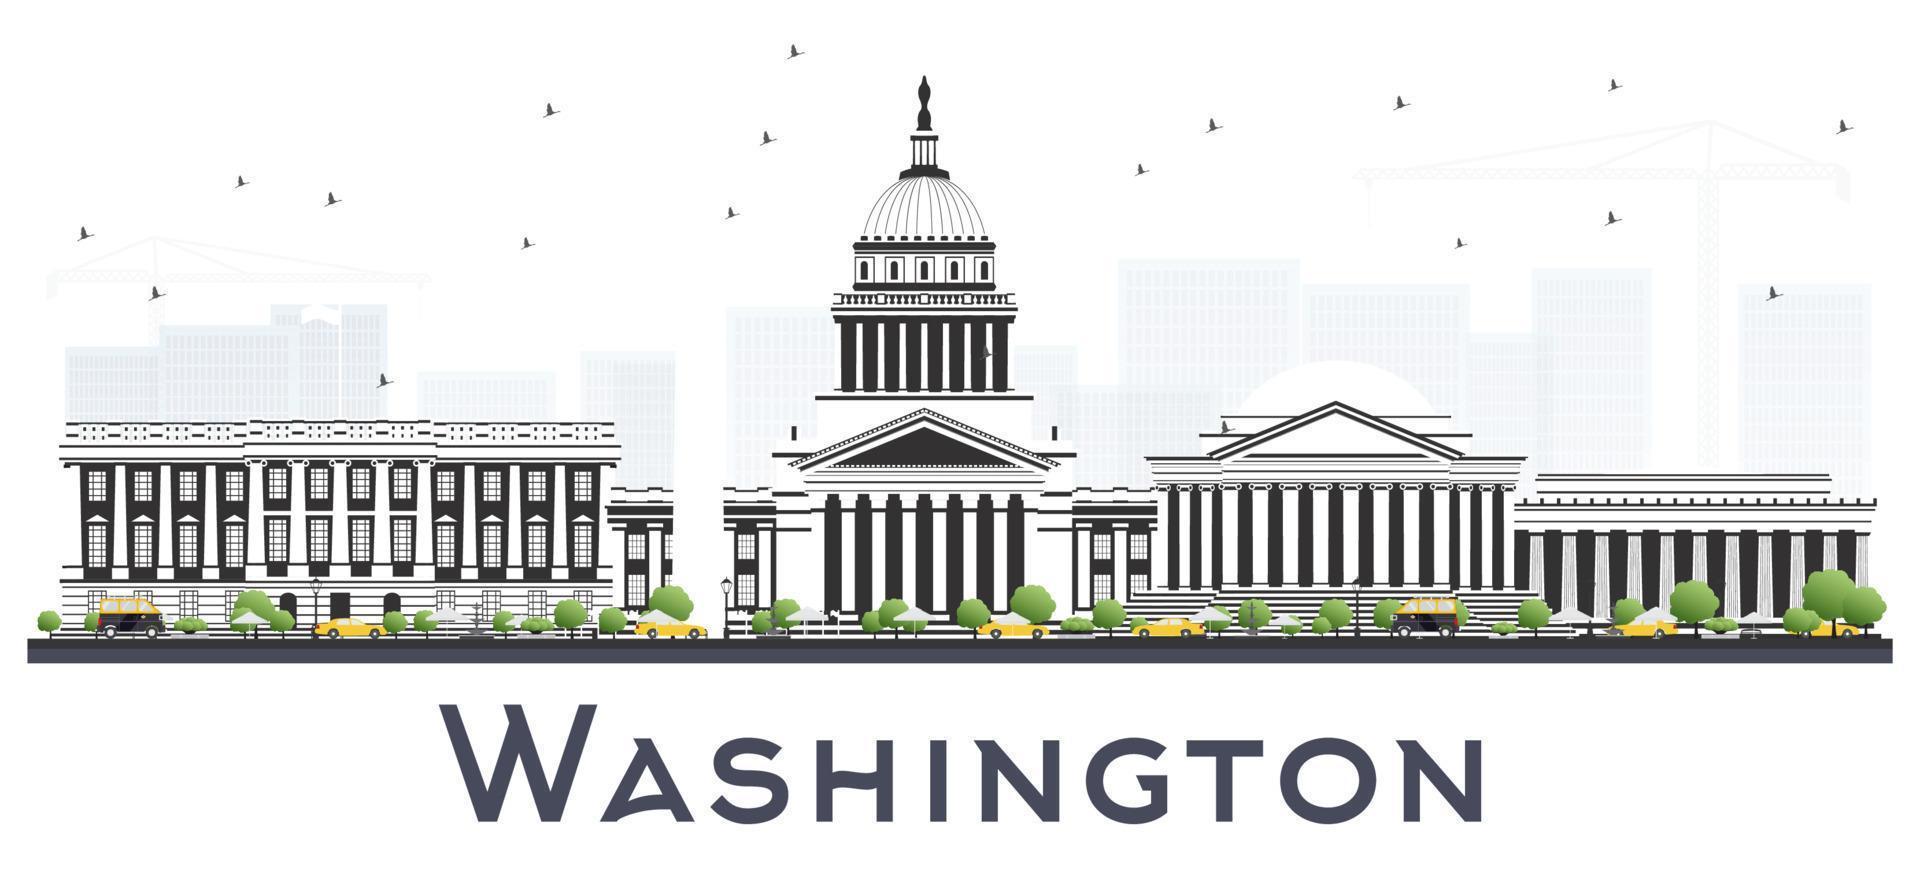 Washington dc USA stad horisont med grå byggnader isolerat på vit. vektor